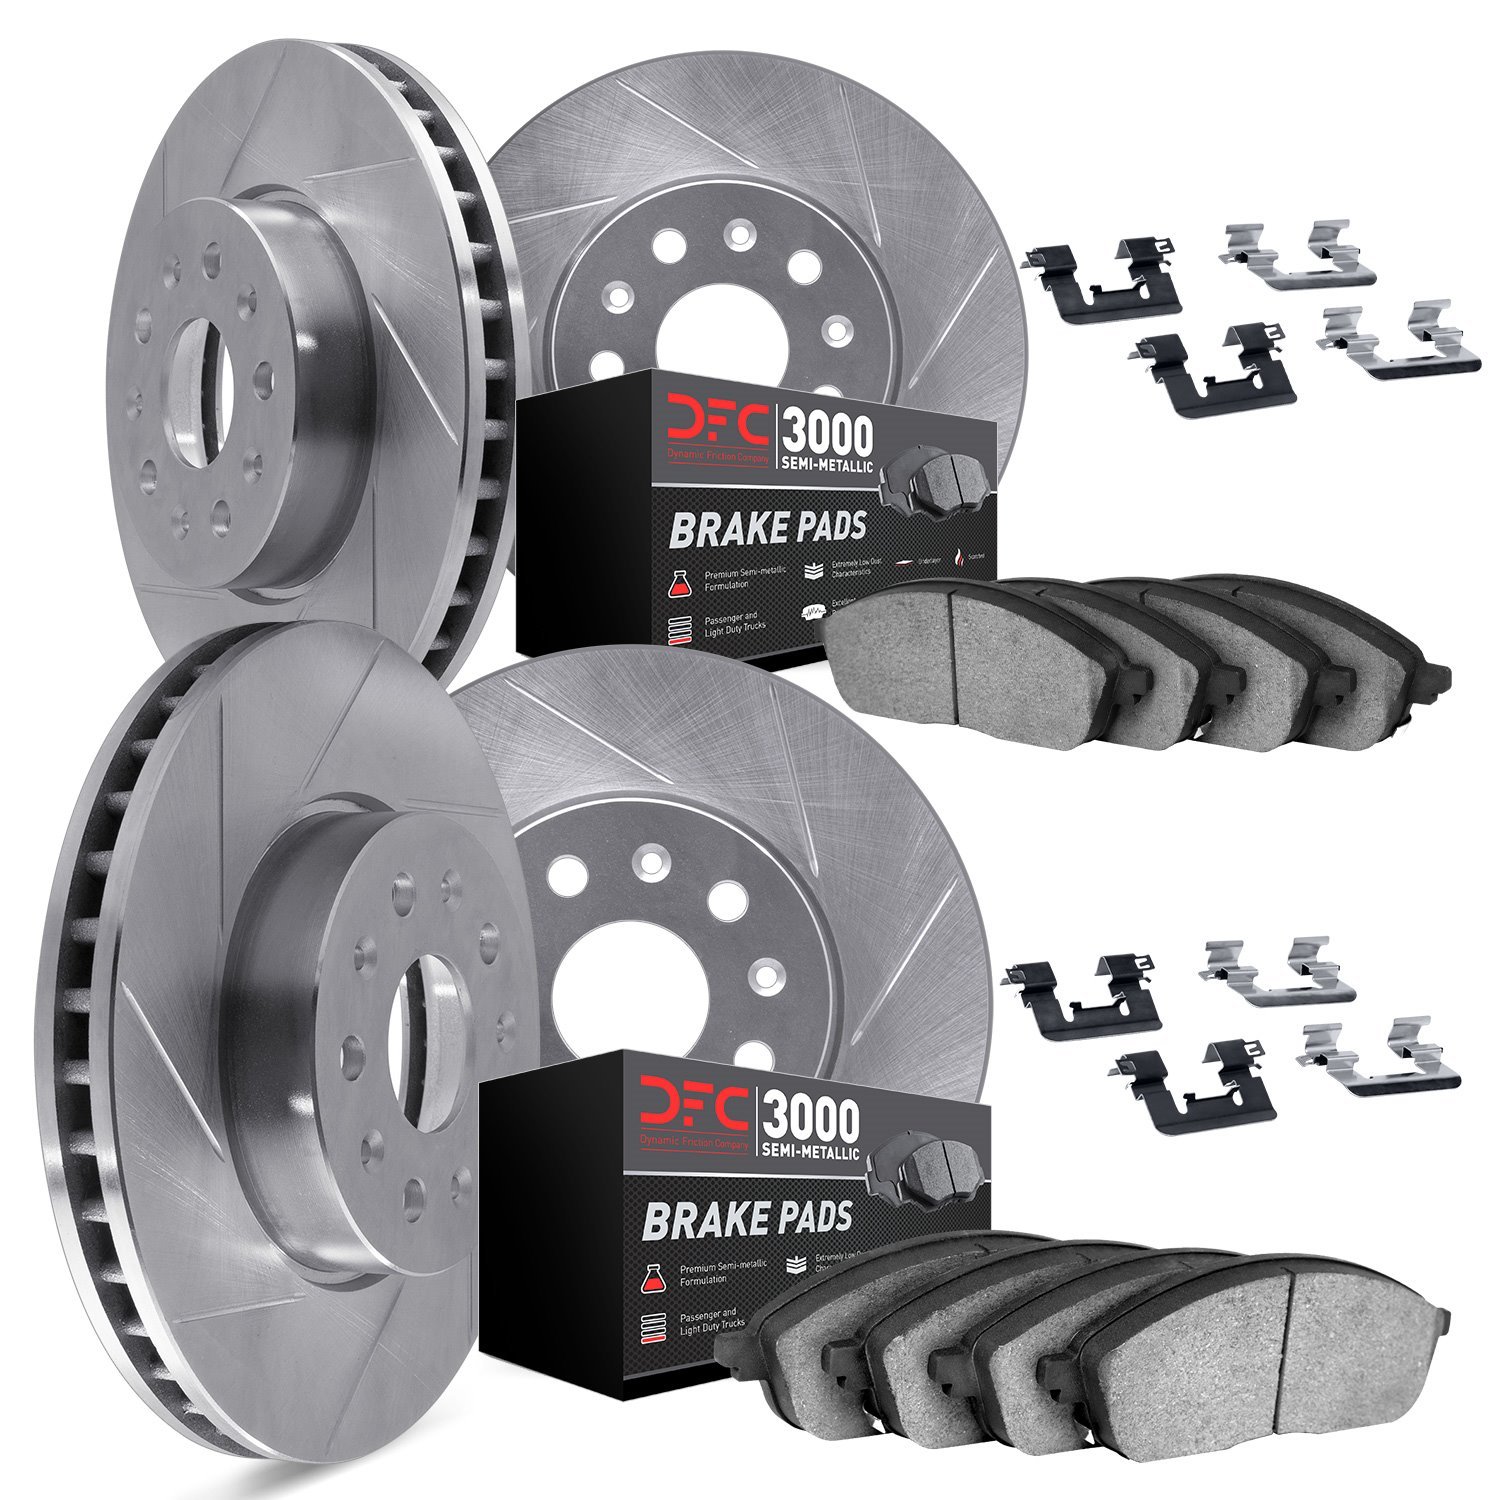 5114-63133 Slotted Brake Rotors with 3000-Series Semi-Metallic Brake Pads Kit & Hardware [Silver], 2013-2019 Mercedes-Benz, Posi